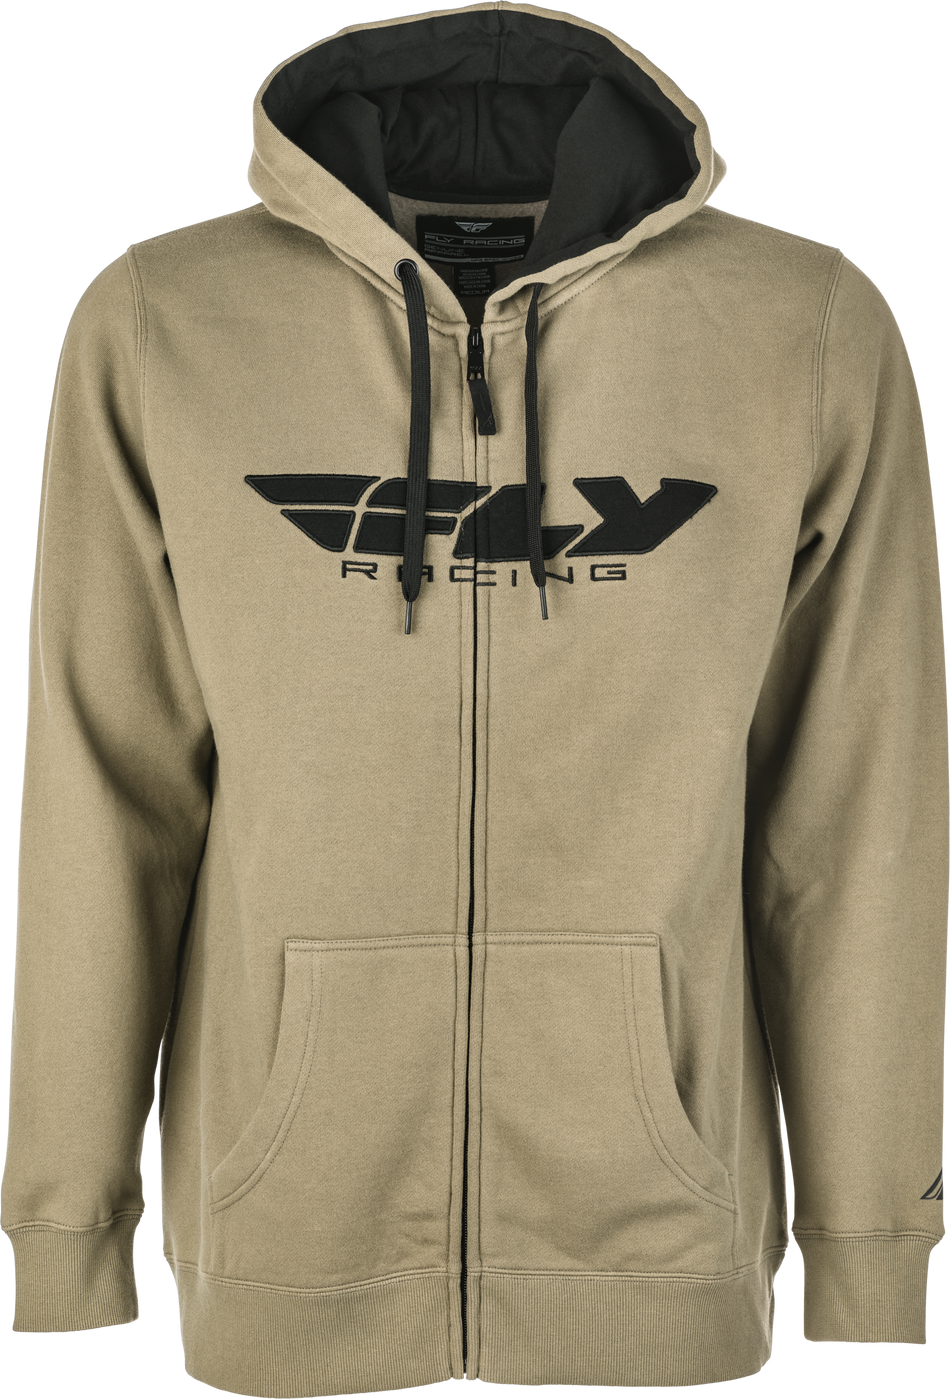 FLY RACING Fly Corporate Zip Up Hoodie Tan/Black 2x 354-01942X